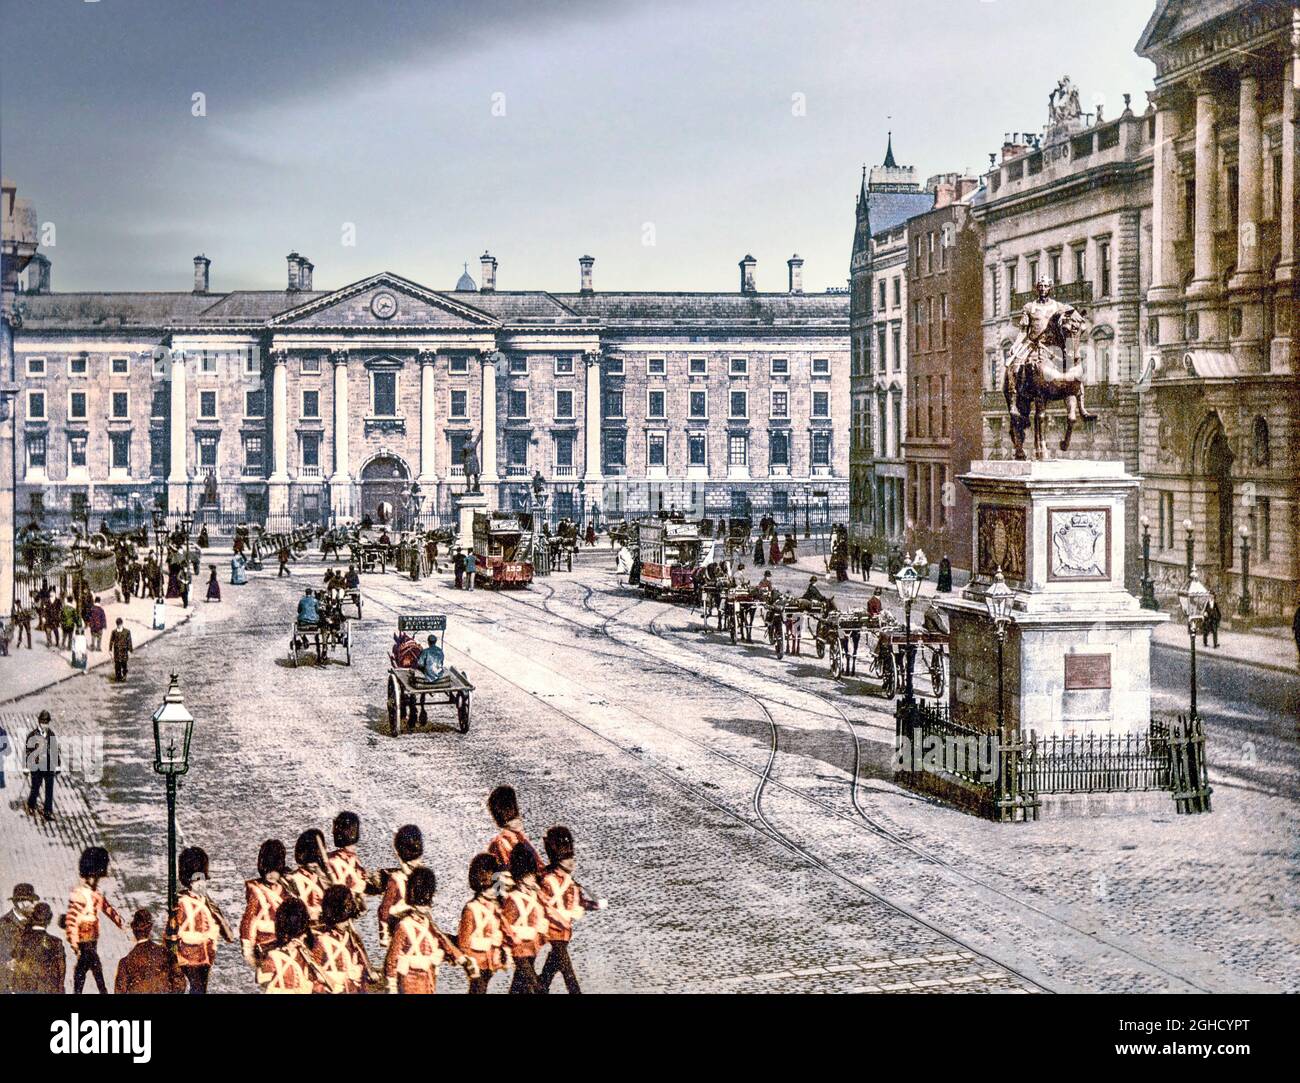 Una fotografia dei primi anni del XX secolo del Trinity College (Università) a College Green nel centro di Dublino, in Irlanda, con soldati, veicoli trainati da cavalli e tram elettrici di recente introduzione. Foto Stock